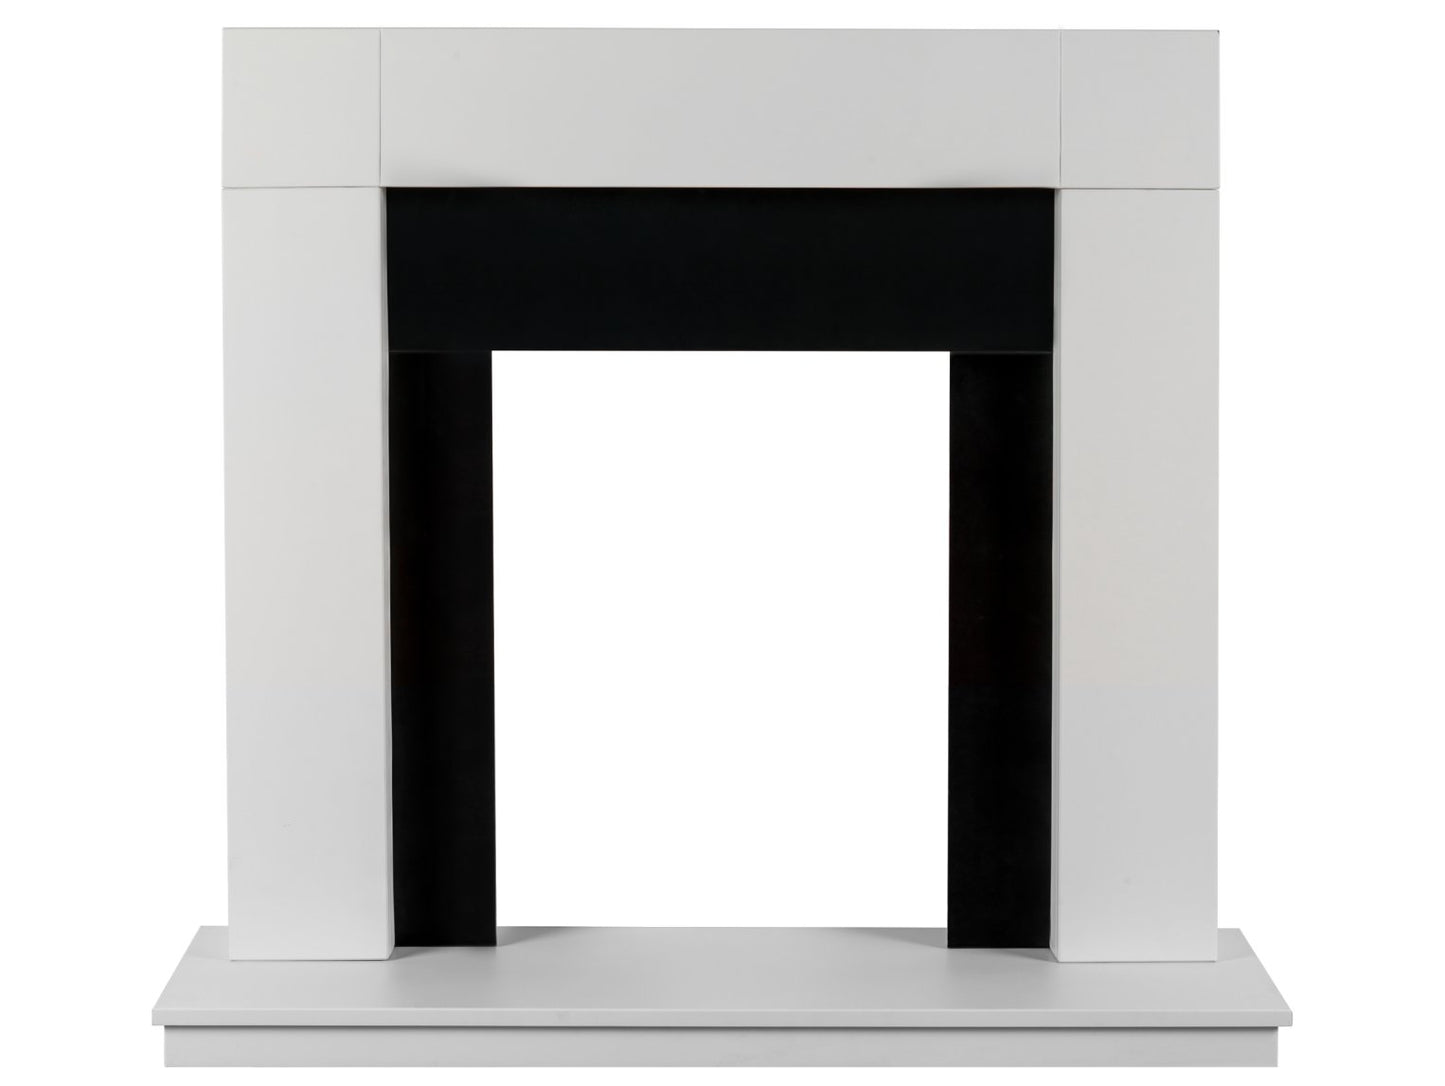 Adam Malmo Fireplace Pure White & Black/Pure White, 39"